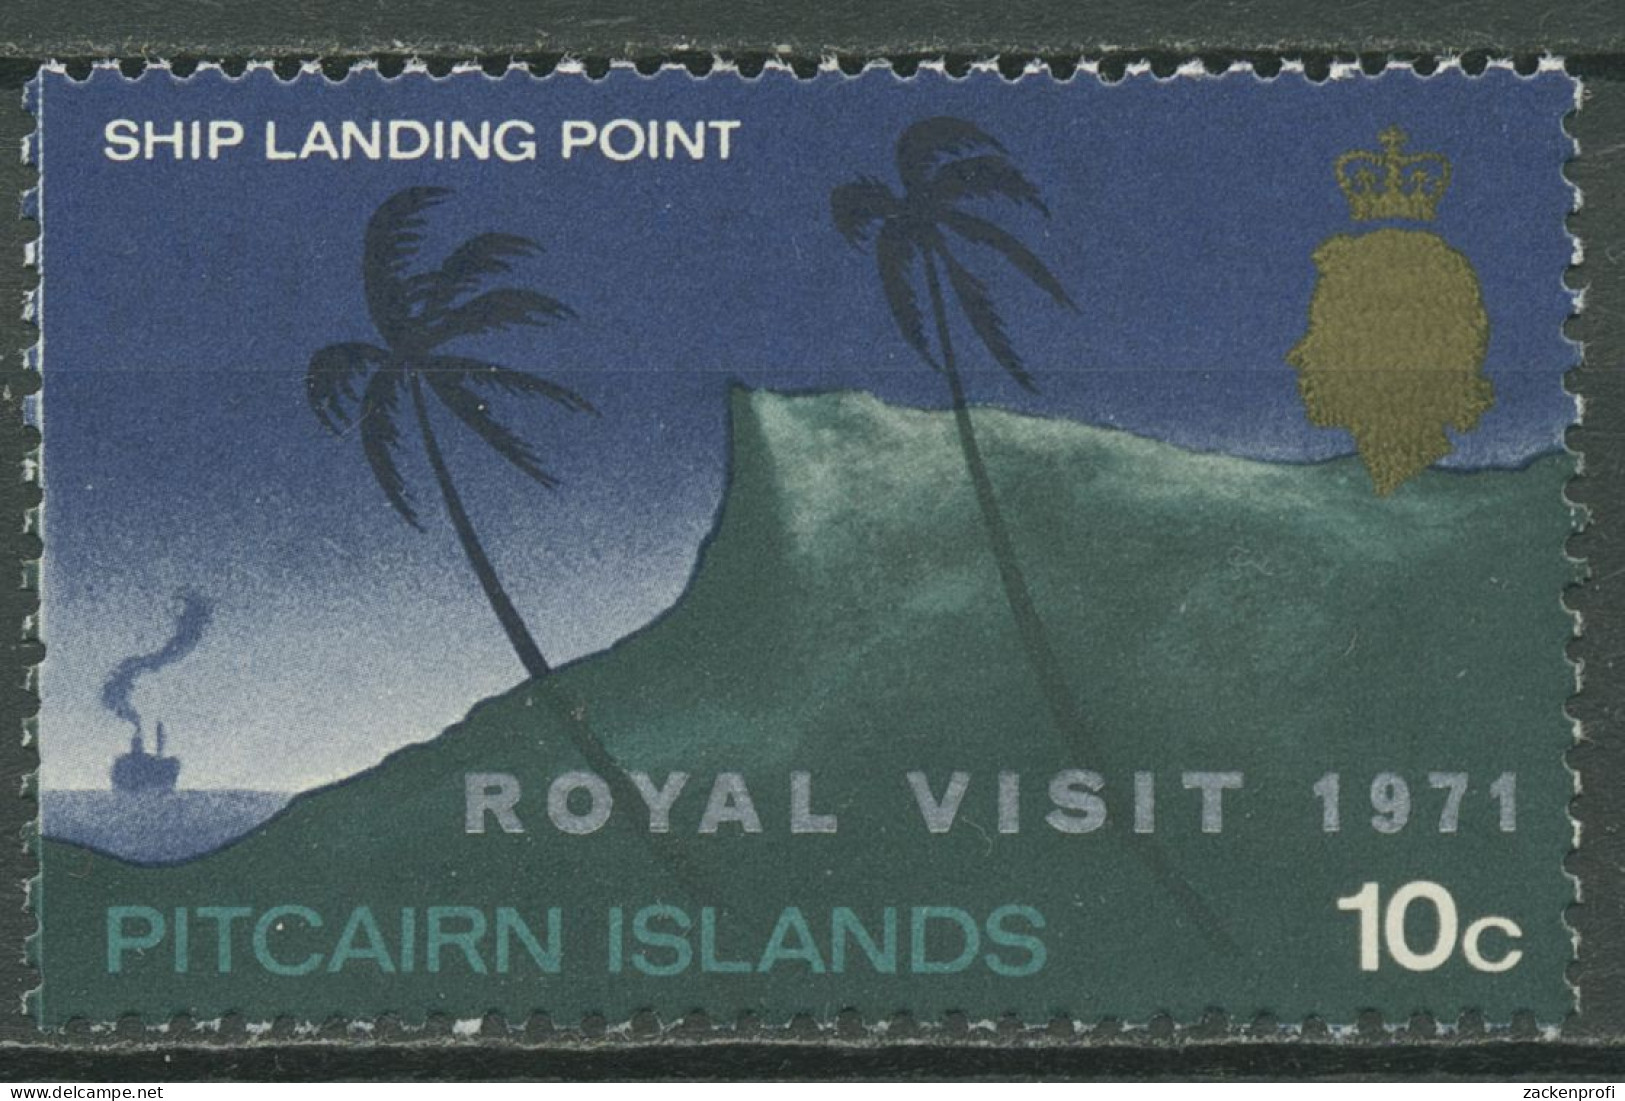 Pitcairn 1971 Royal Visit 50 Jahre Australische Luftlinie 118 Mit Falz - Pitcairn Islands